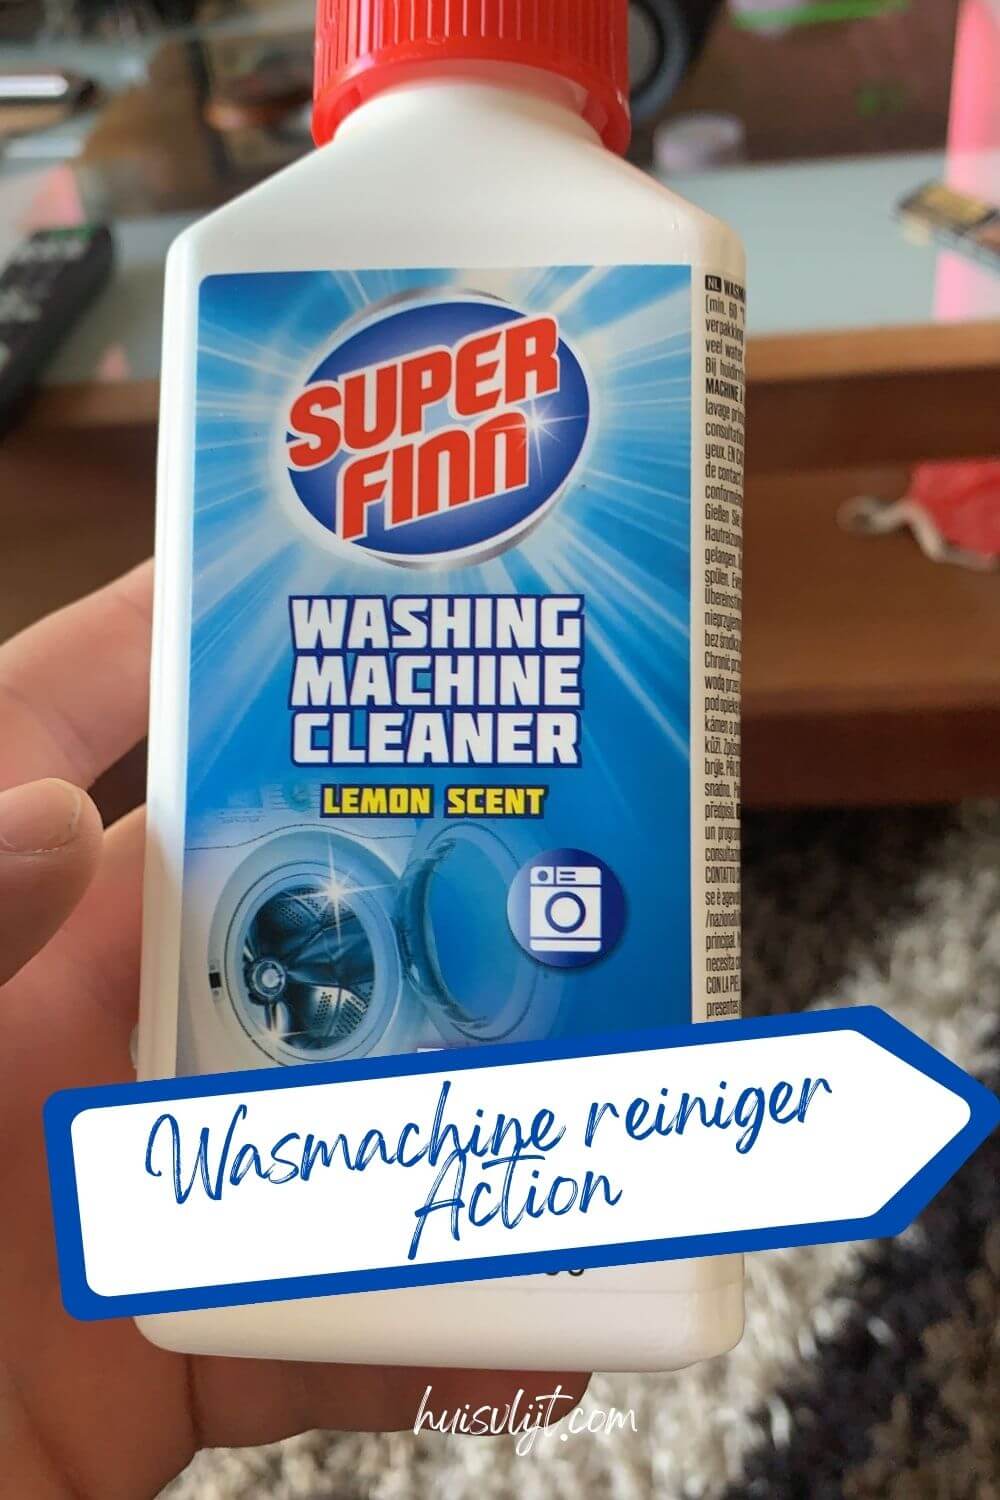 Wasmachine reiniger Action: Super Finn 1,64 voor 2